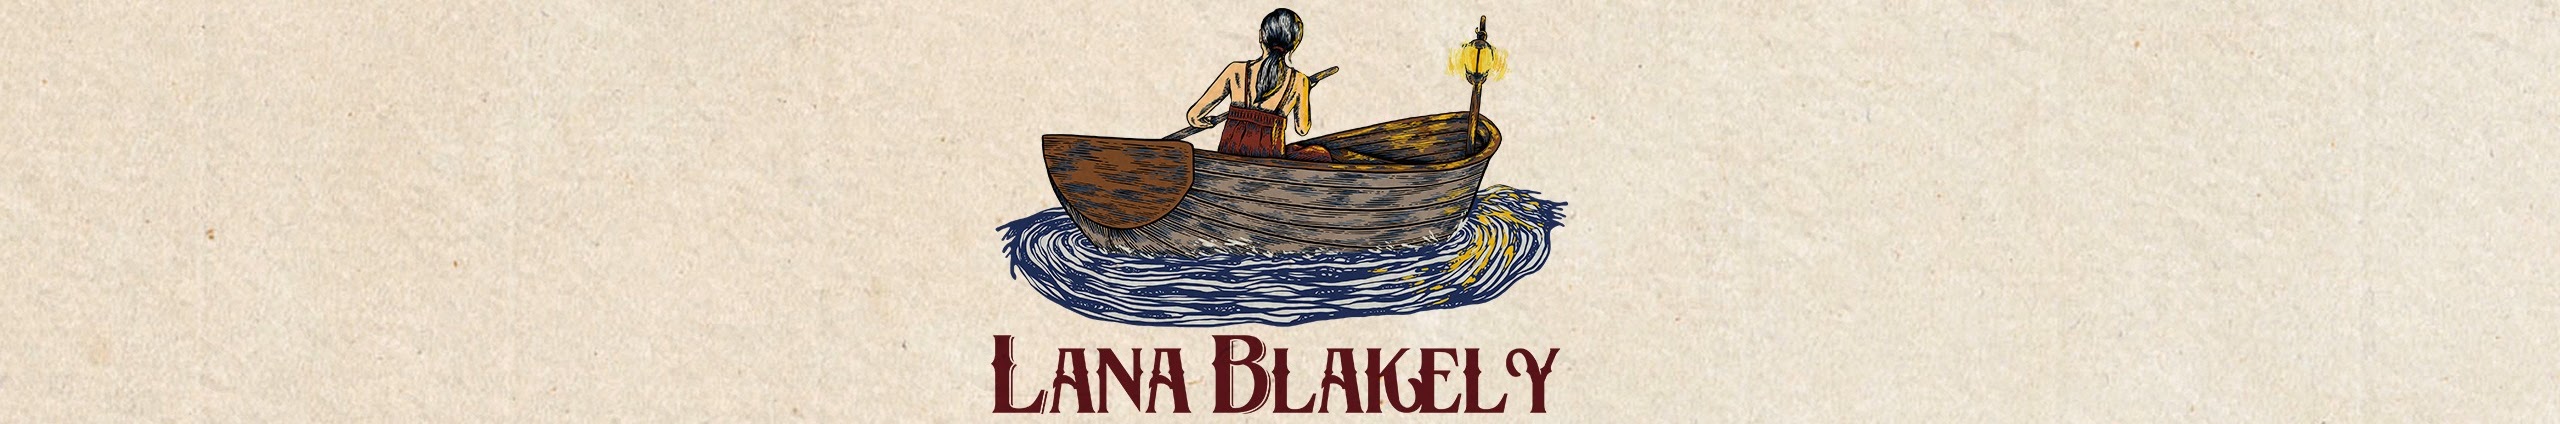 Lana Blakely Banner